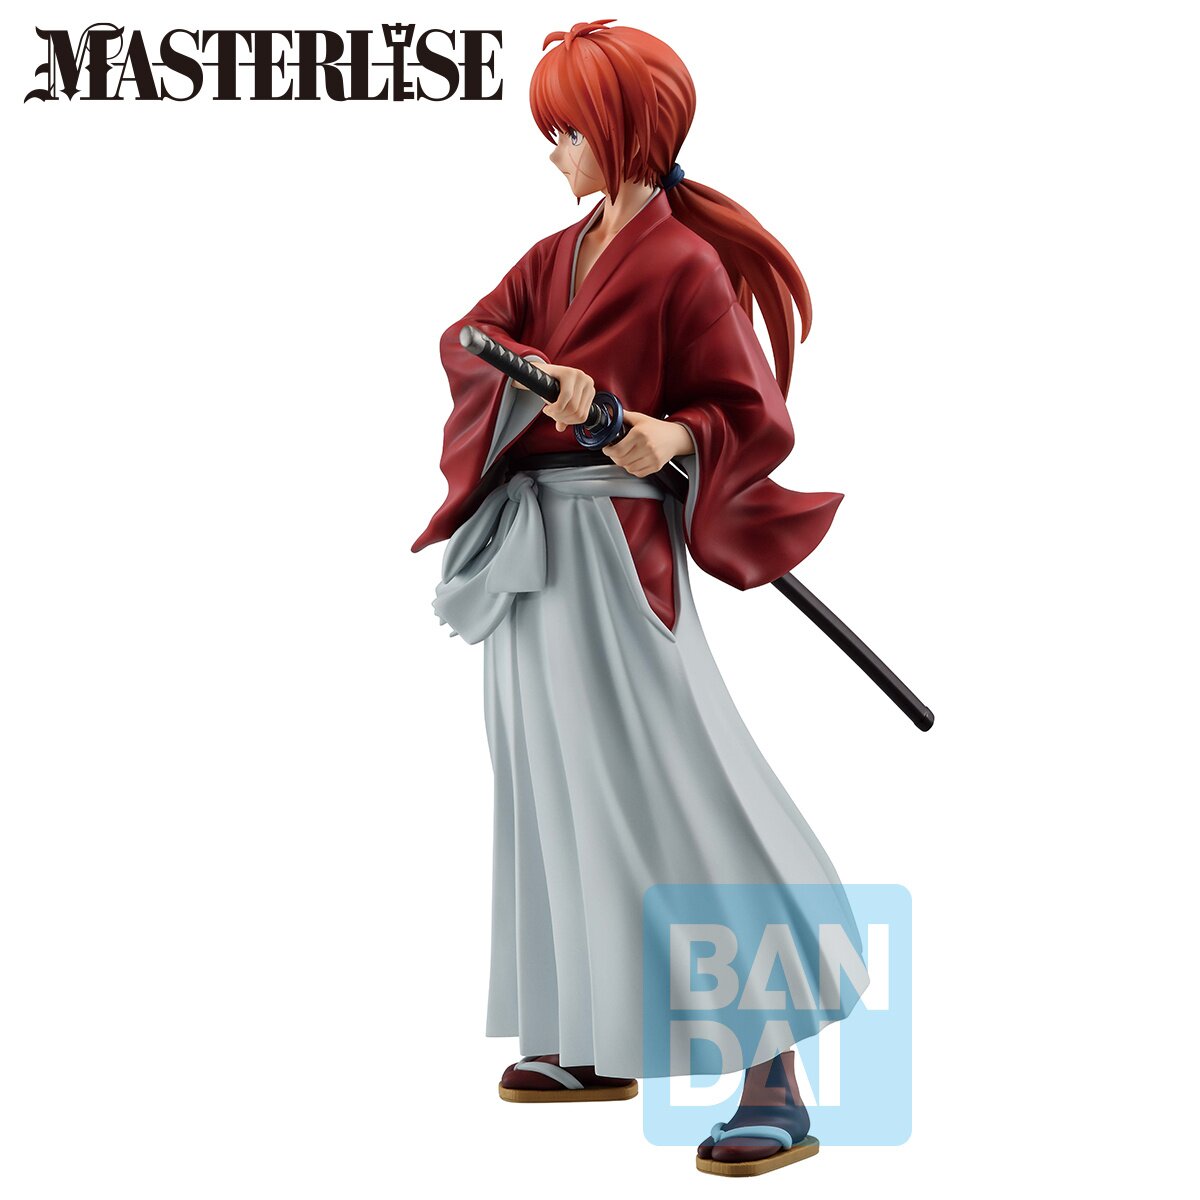 BUZZmod Rurouni Kenshin Kenshin Himura 1/12 Scale Action Figure